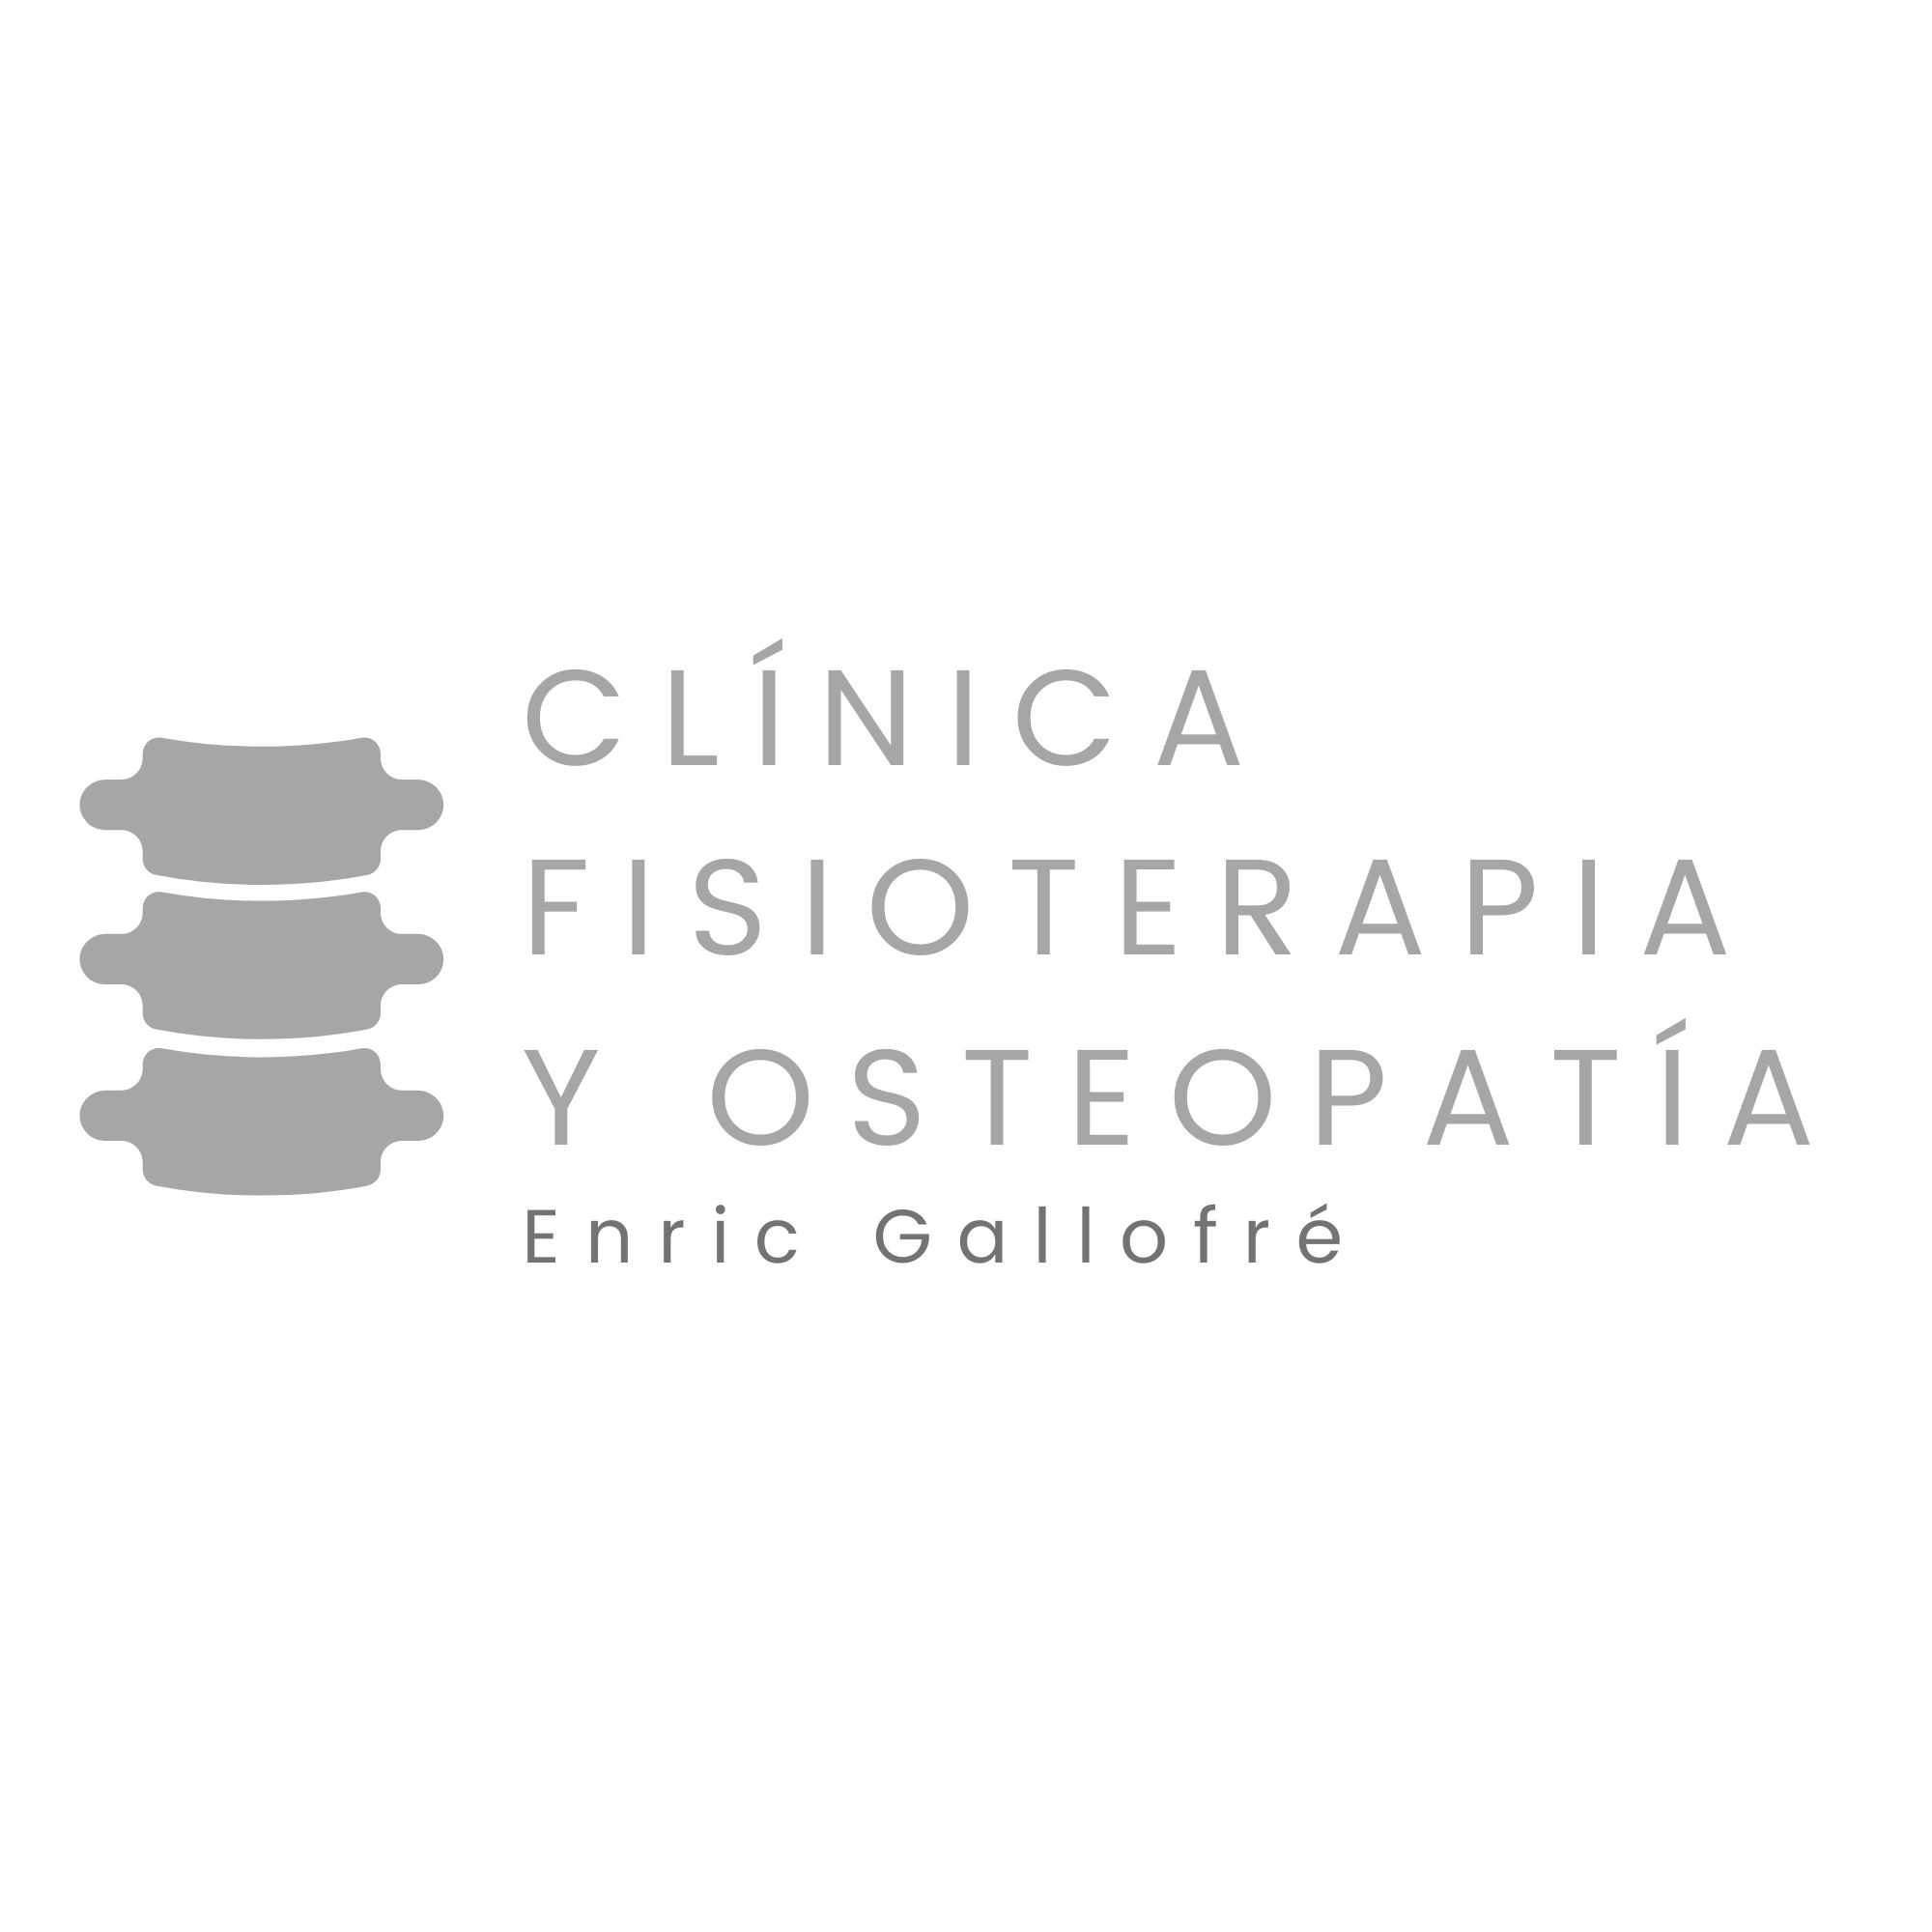 Clínica de Fisioterapia y Osteopatía Enric Gallofre, Madrid